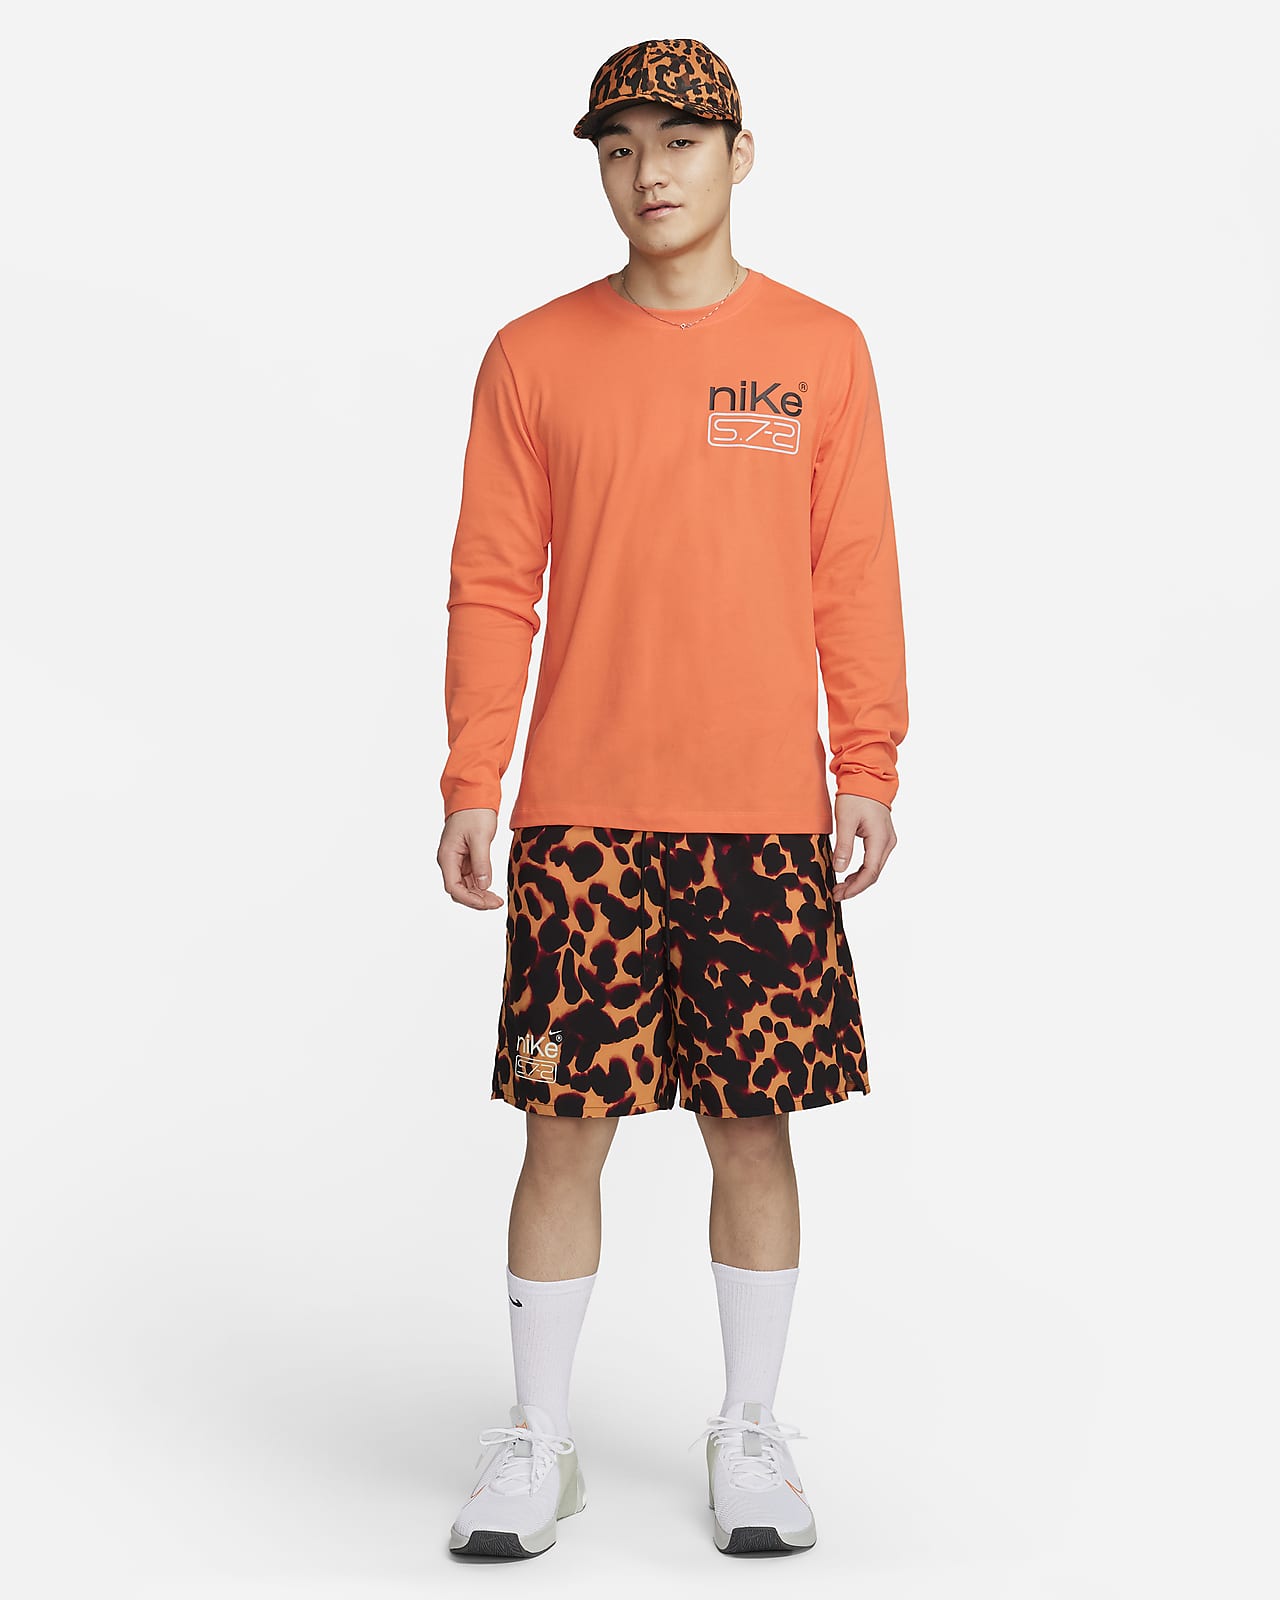 Nike Men's Dri-FIT Long-Sleeve Fitness T-Shirt.